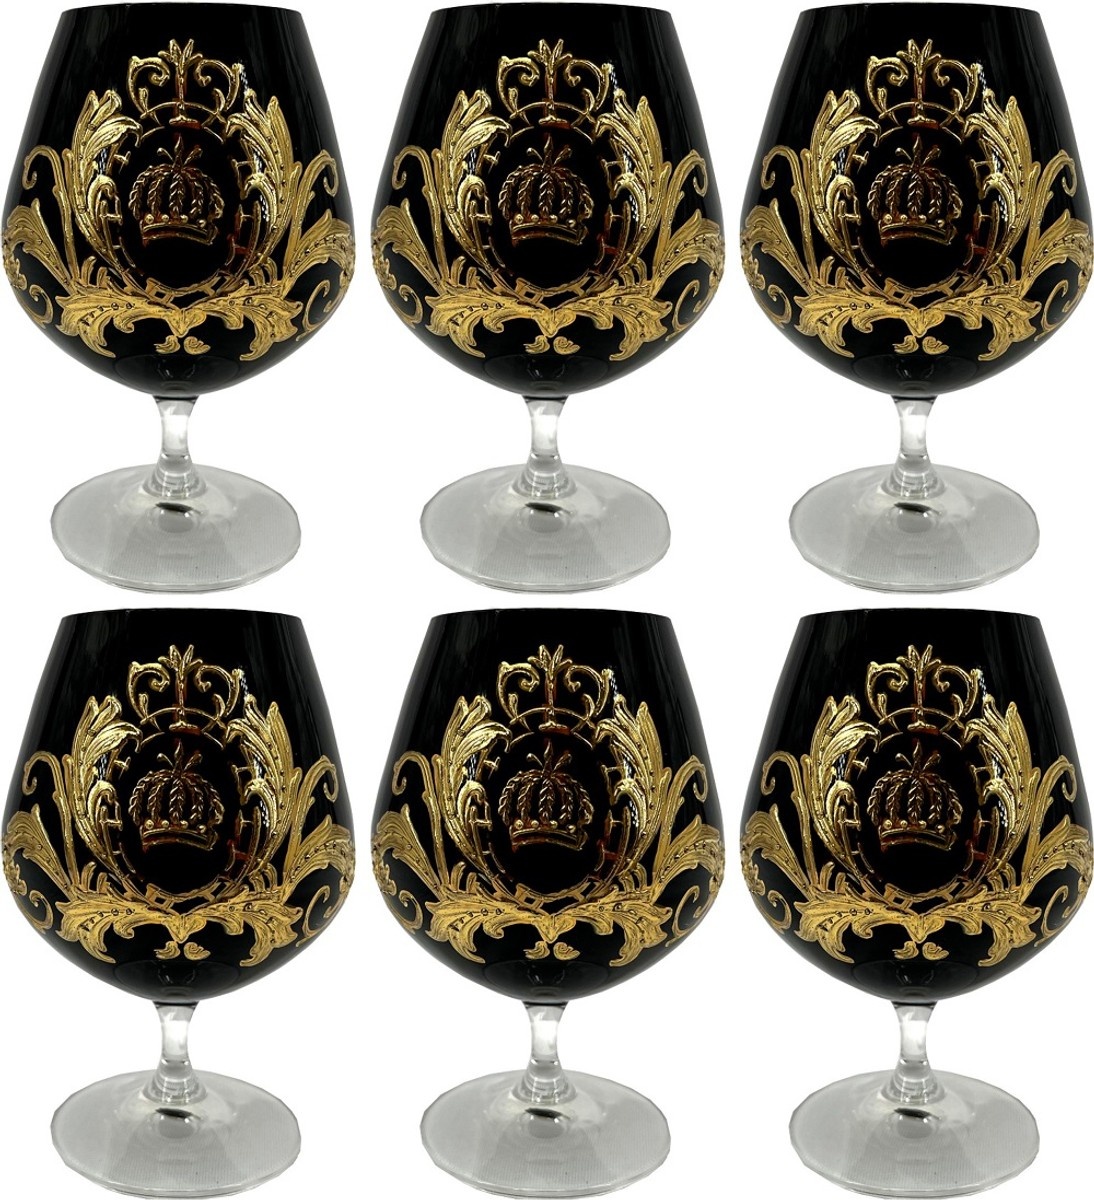 Pompöös by Casa Padrino Luxus Cognacglas Set Schwarz / Gold Ø 9 x H. 14,5 cm - Cognacgläser mit 24 Karat Vergoldung - Pompööse Gläser designed by Harald Glööckler